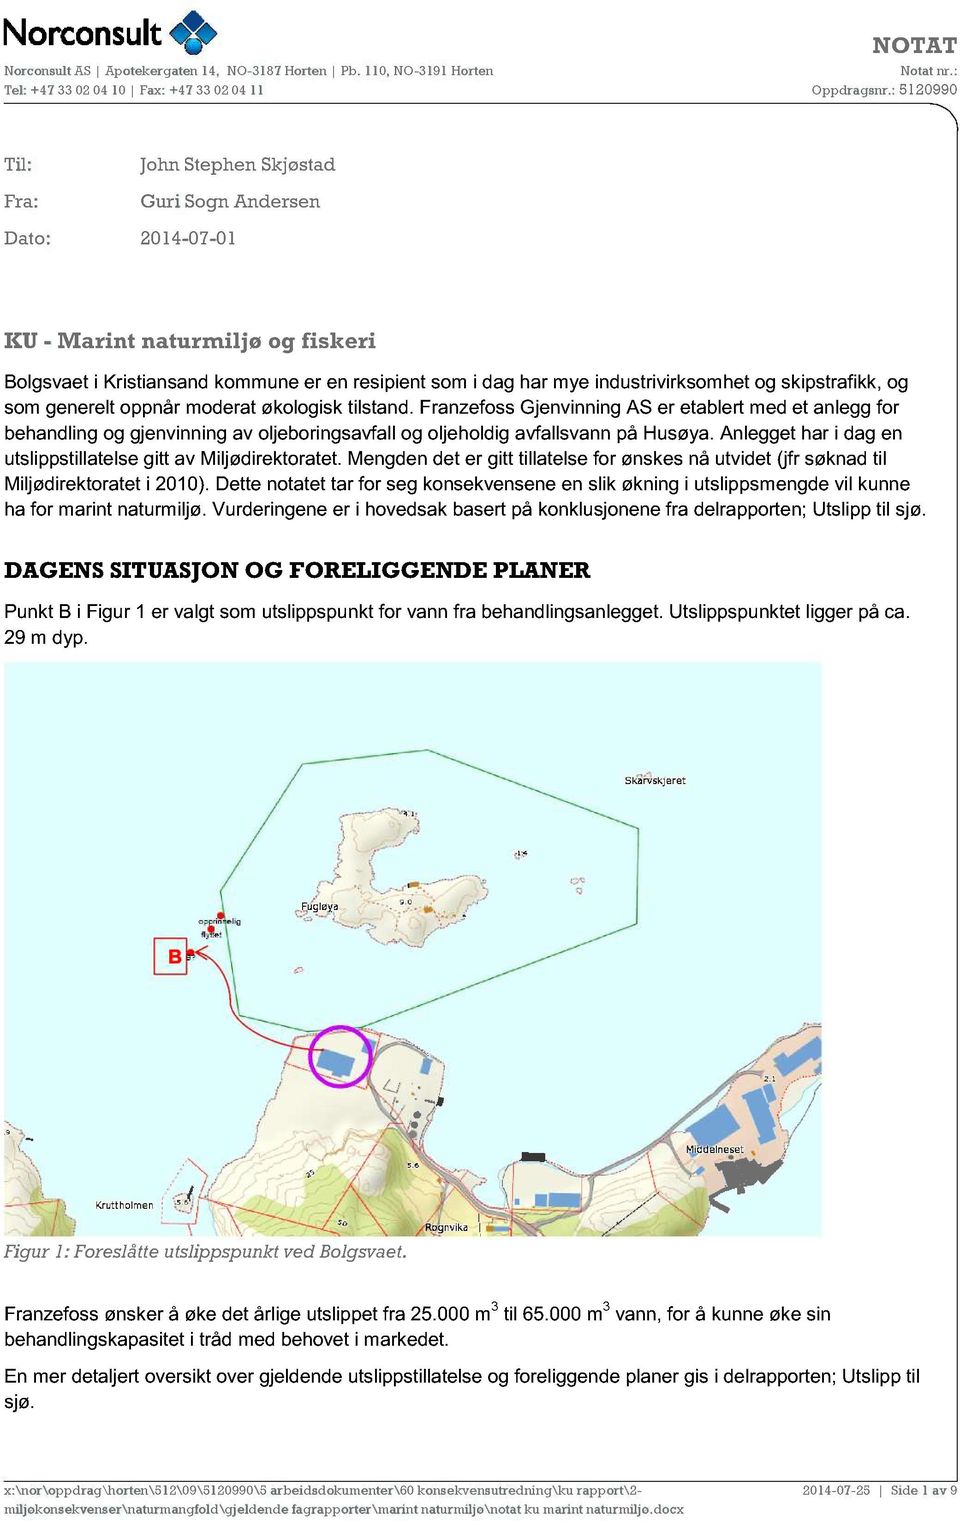 Franzefoss Gjenvinning AS er etablert med et anlegg for behandling og gjenvinning av oljeboringsavfall og oljeholdig avfallsvann på Husøya.